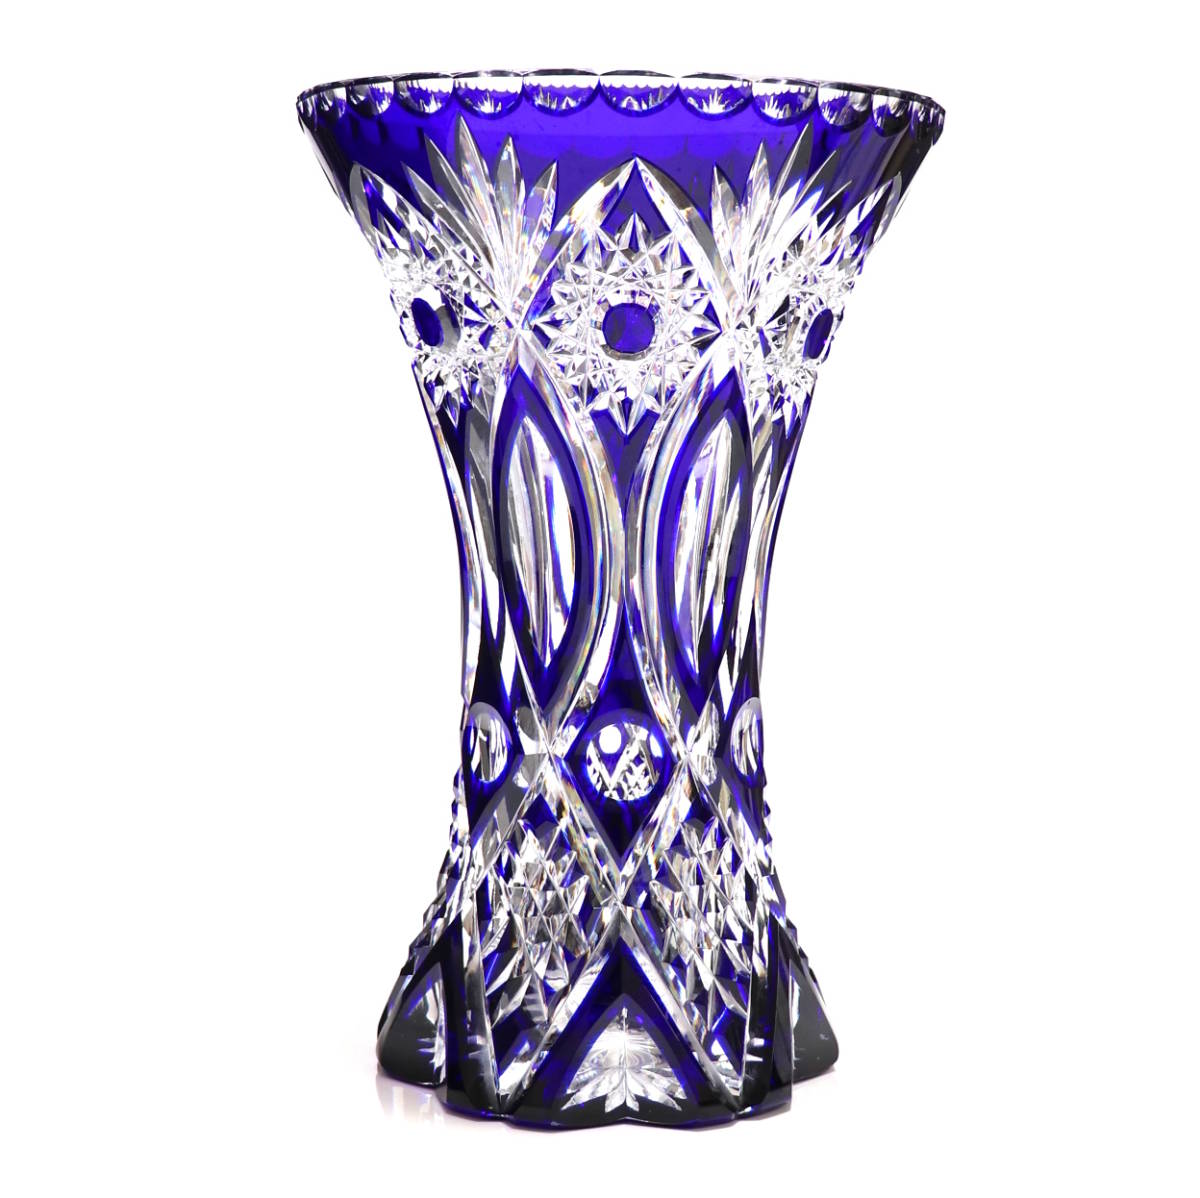 オールド・バカラ (BACCARAT) 1890年 ディアマン・ピエーリー 3.4kg 31.3cm 花瓶 青色被せ装飾 花器 壺 アートピース 切子 ダイヤモンド